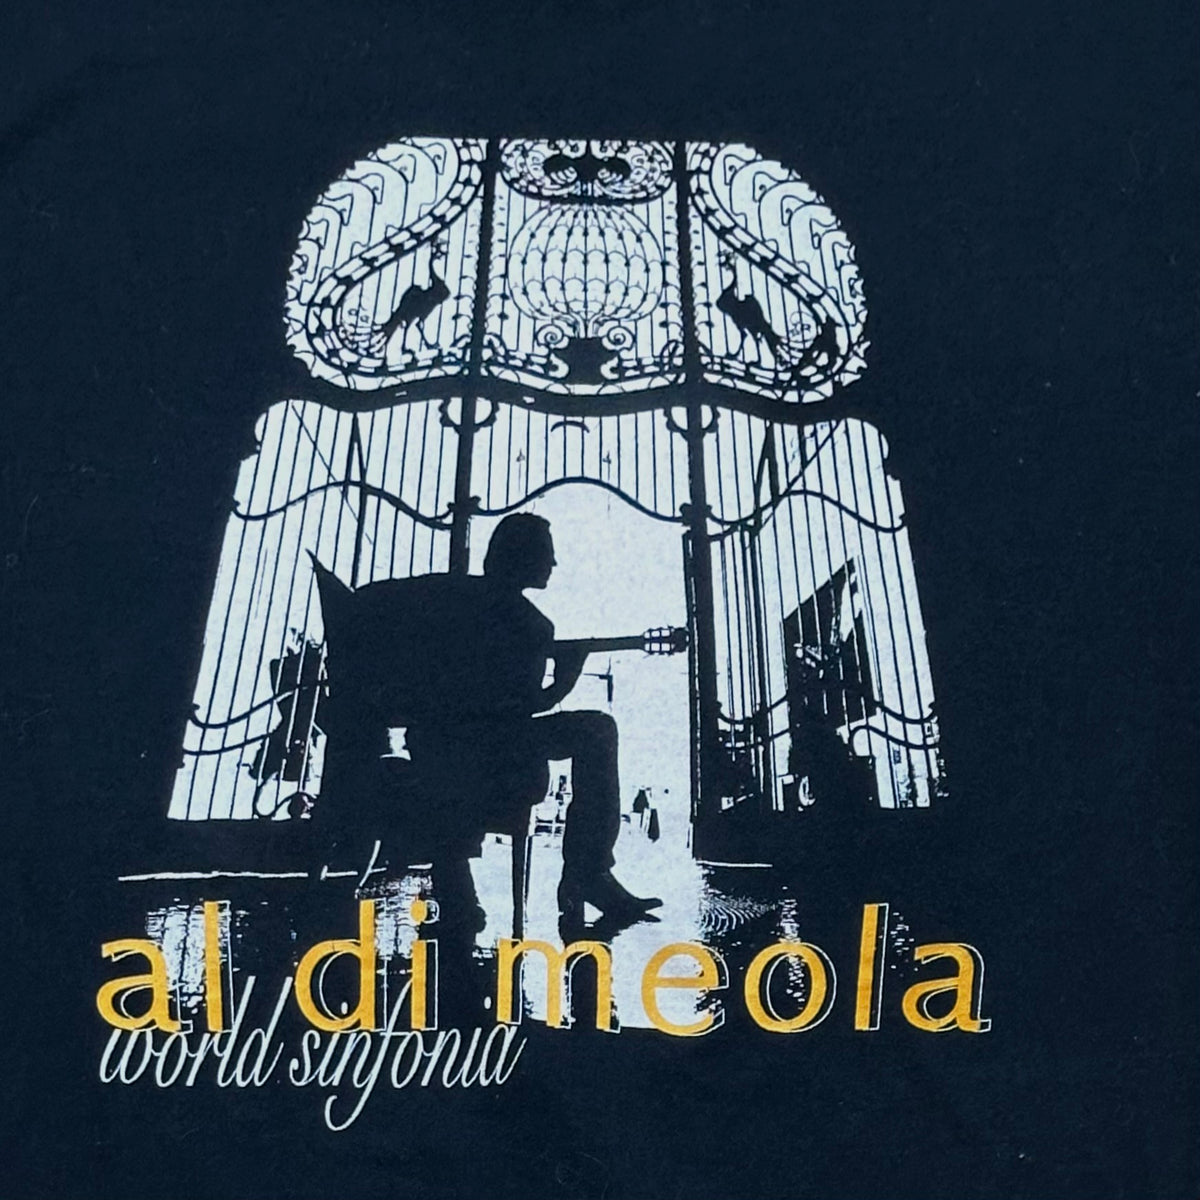 Vintage 90s Al Di Meola World Sinfonia tshirt